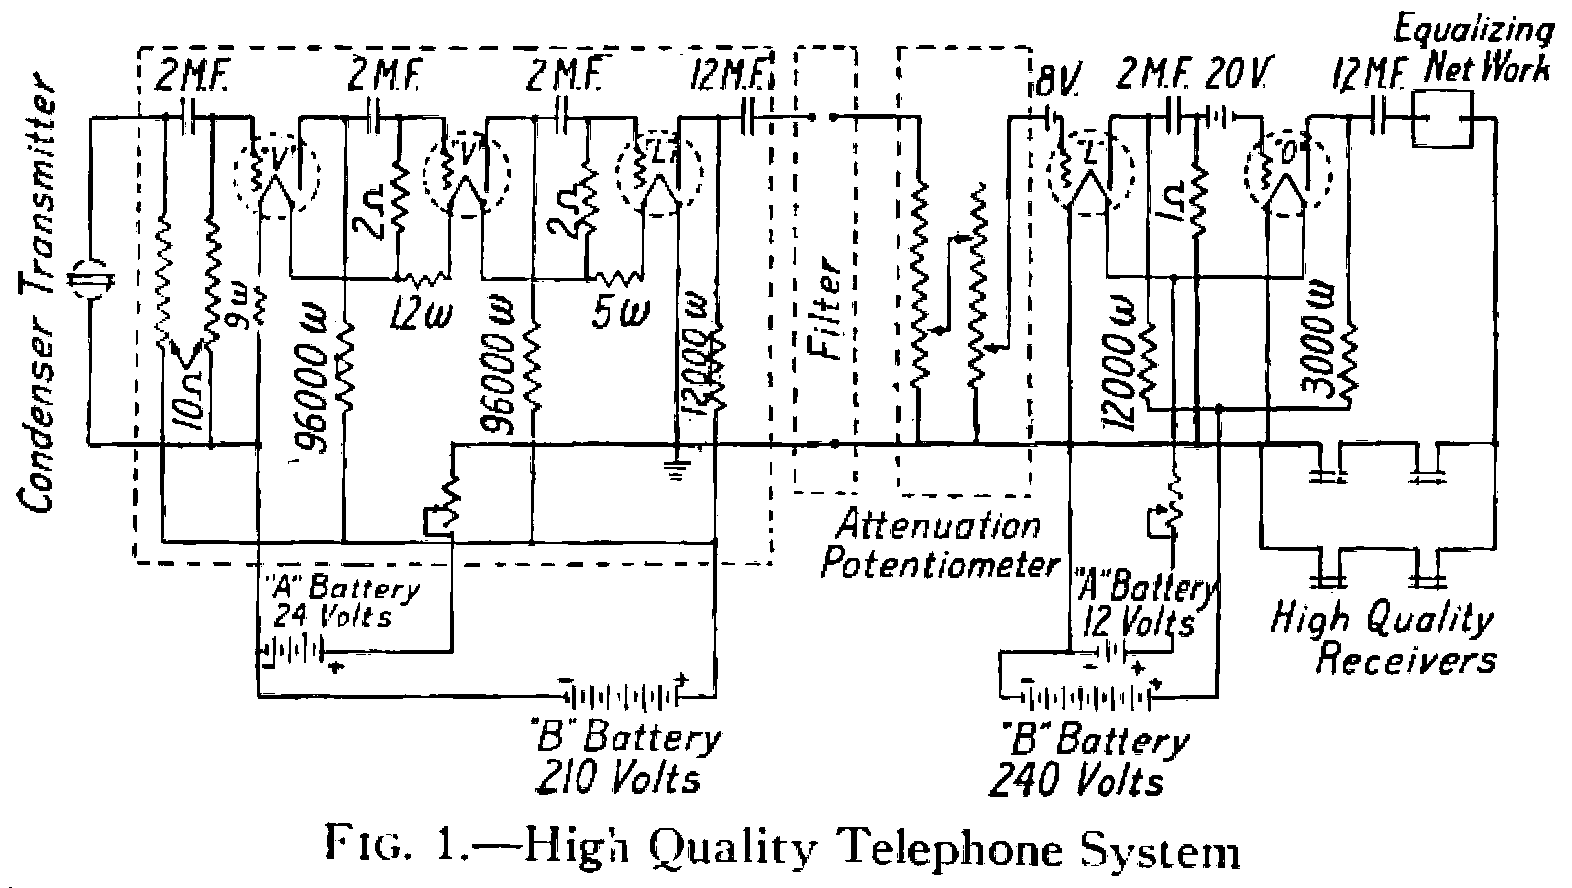 0200 - High Quality Telephone System MOD (PaintShopPro)